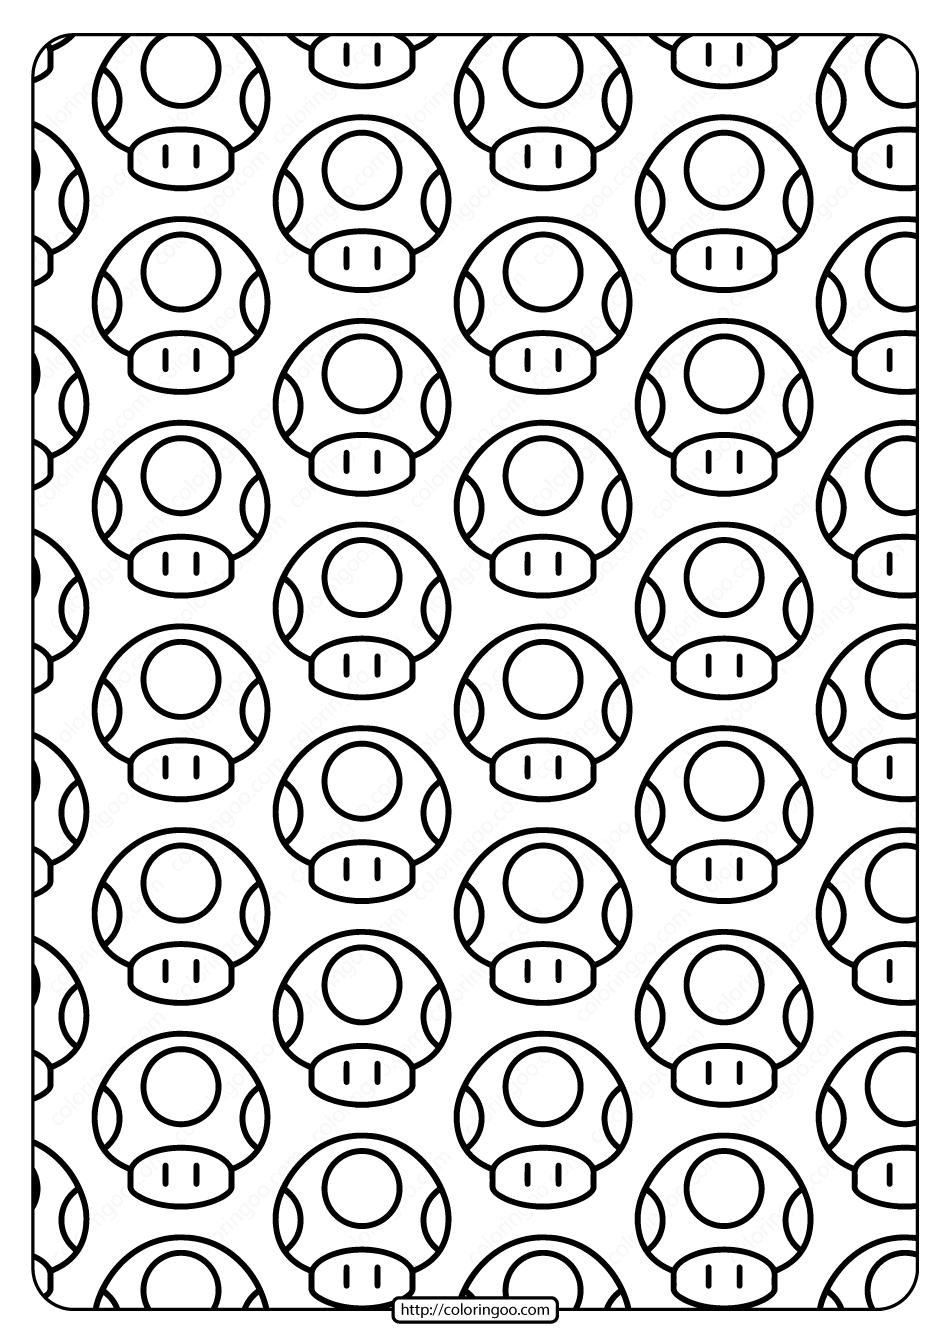 printable super mario mushroom pdf pattern